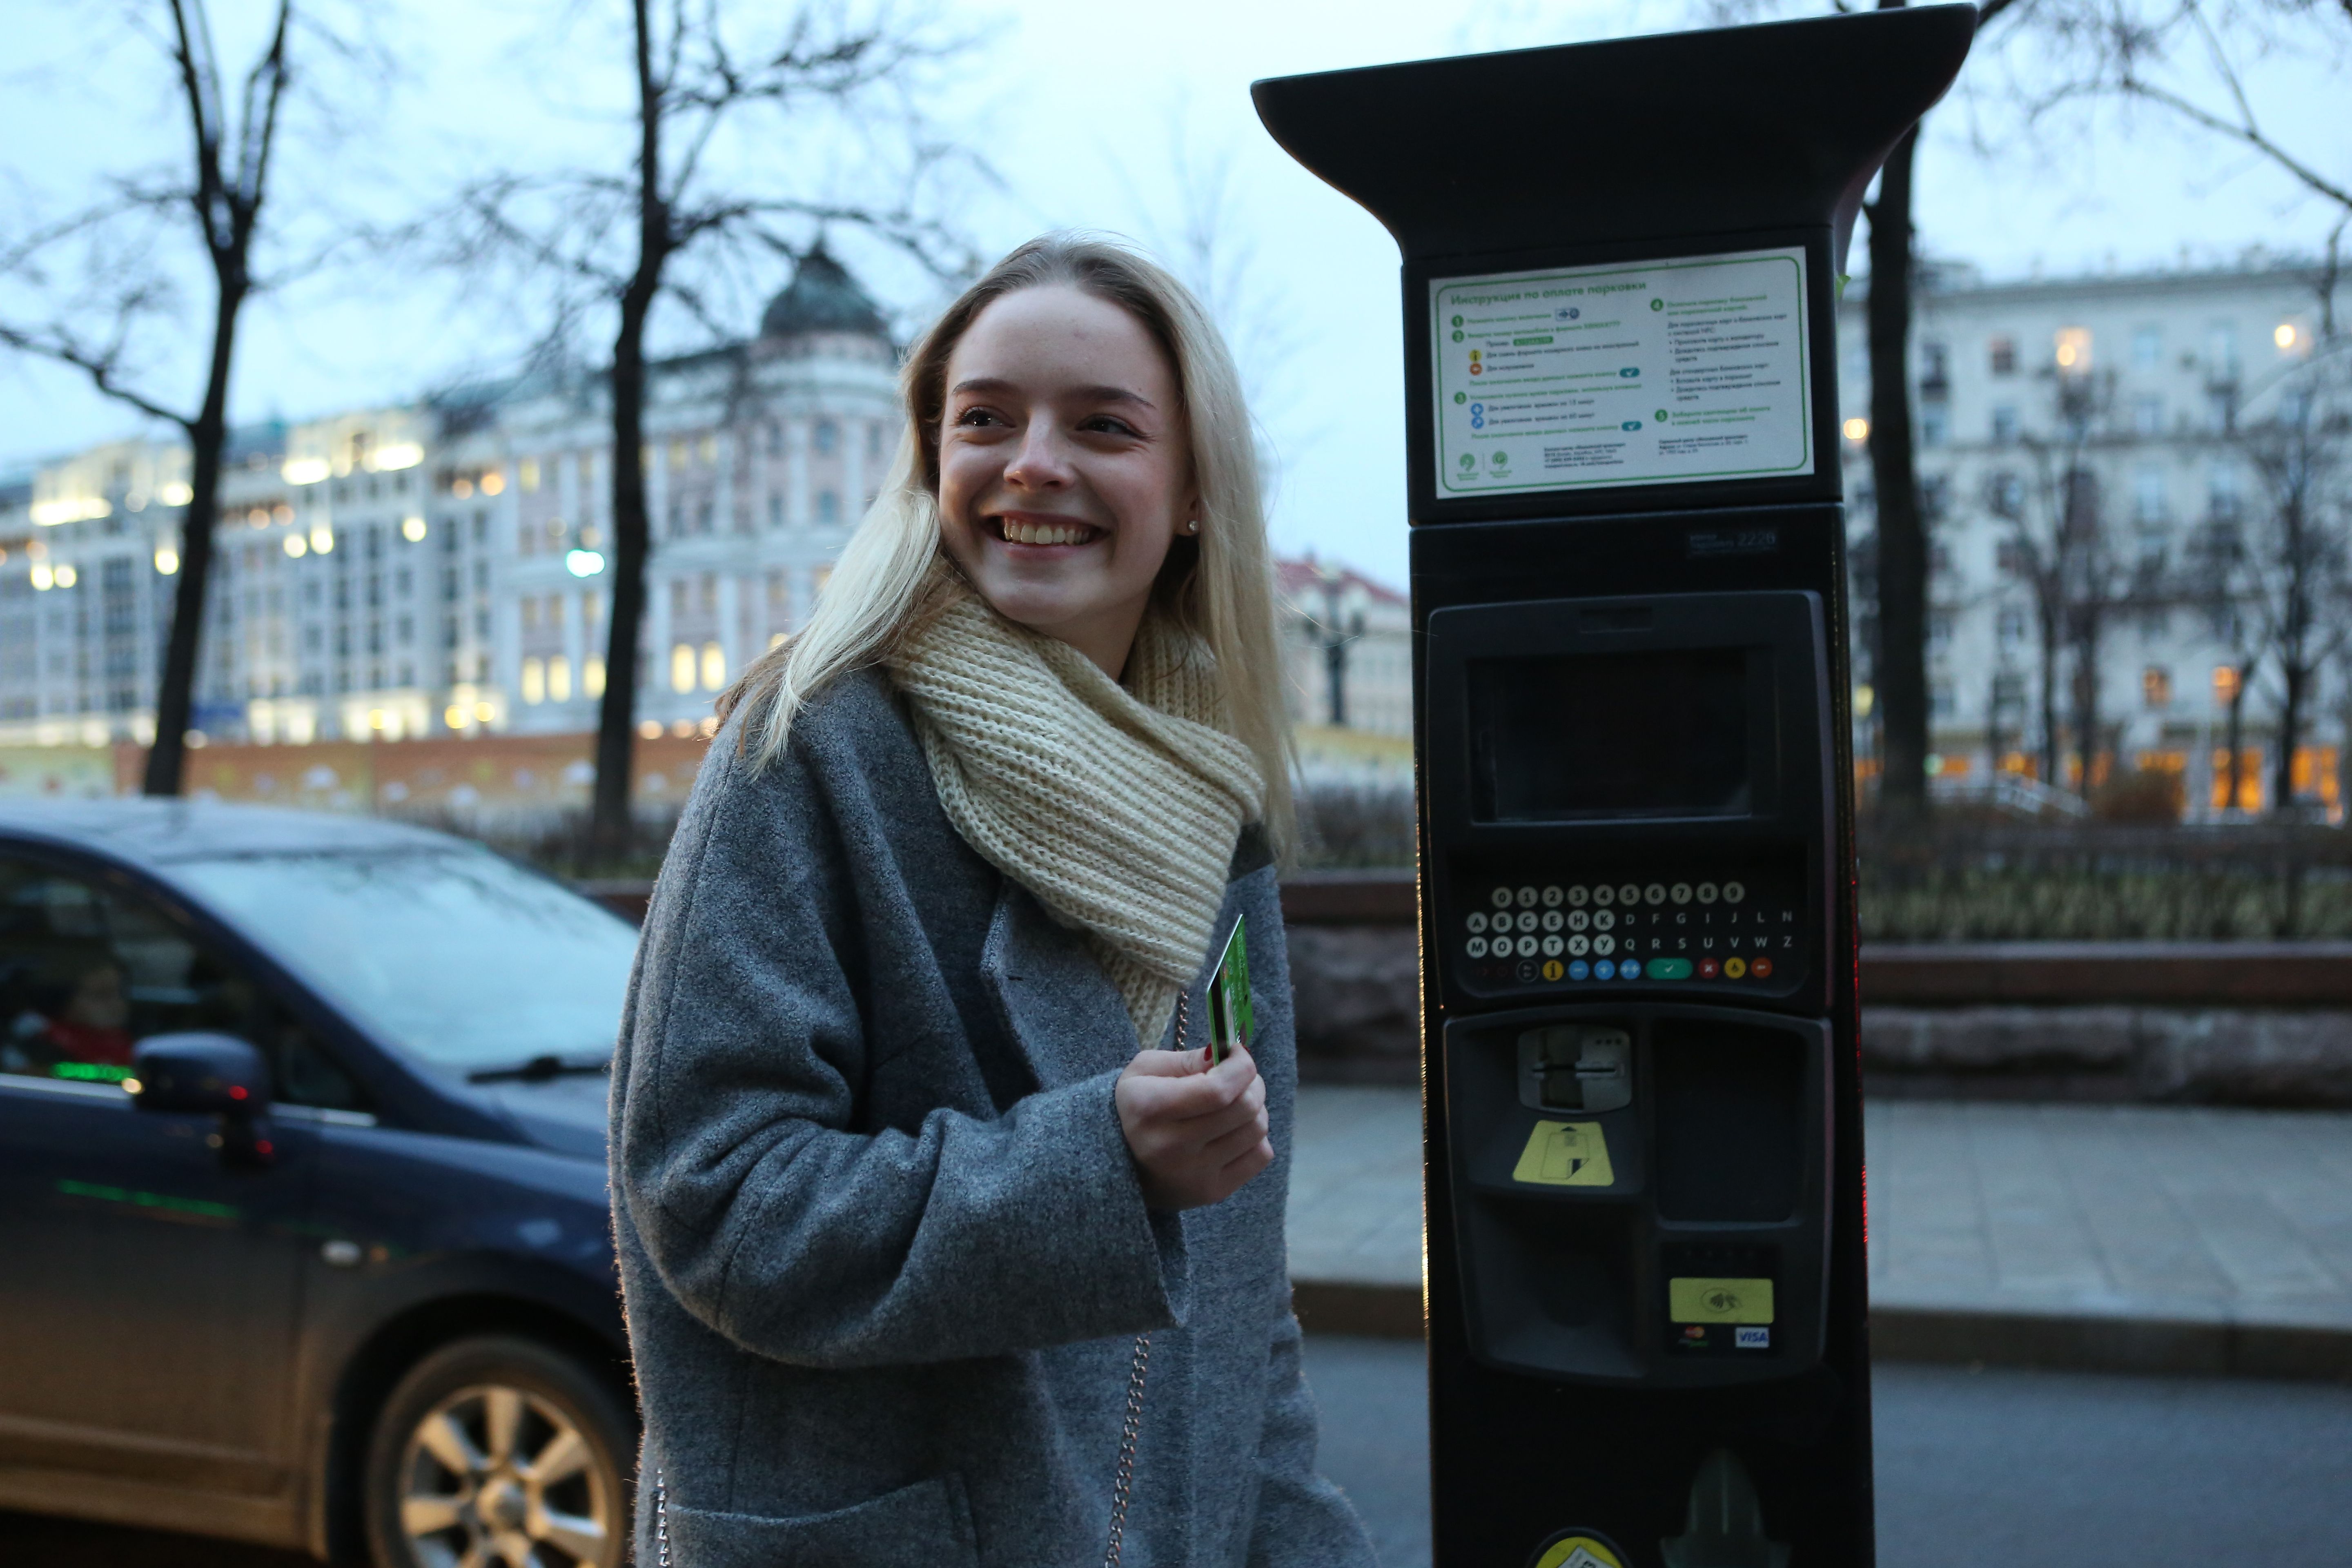 Москвичам посоветовали быть аккуратнее с бесплатной парковкой 23 февраля